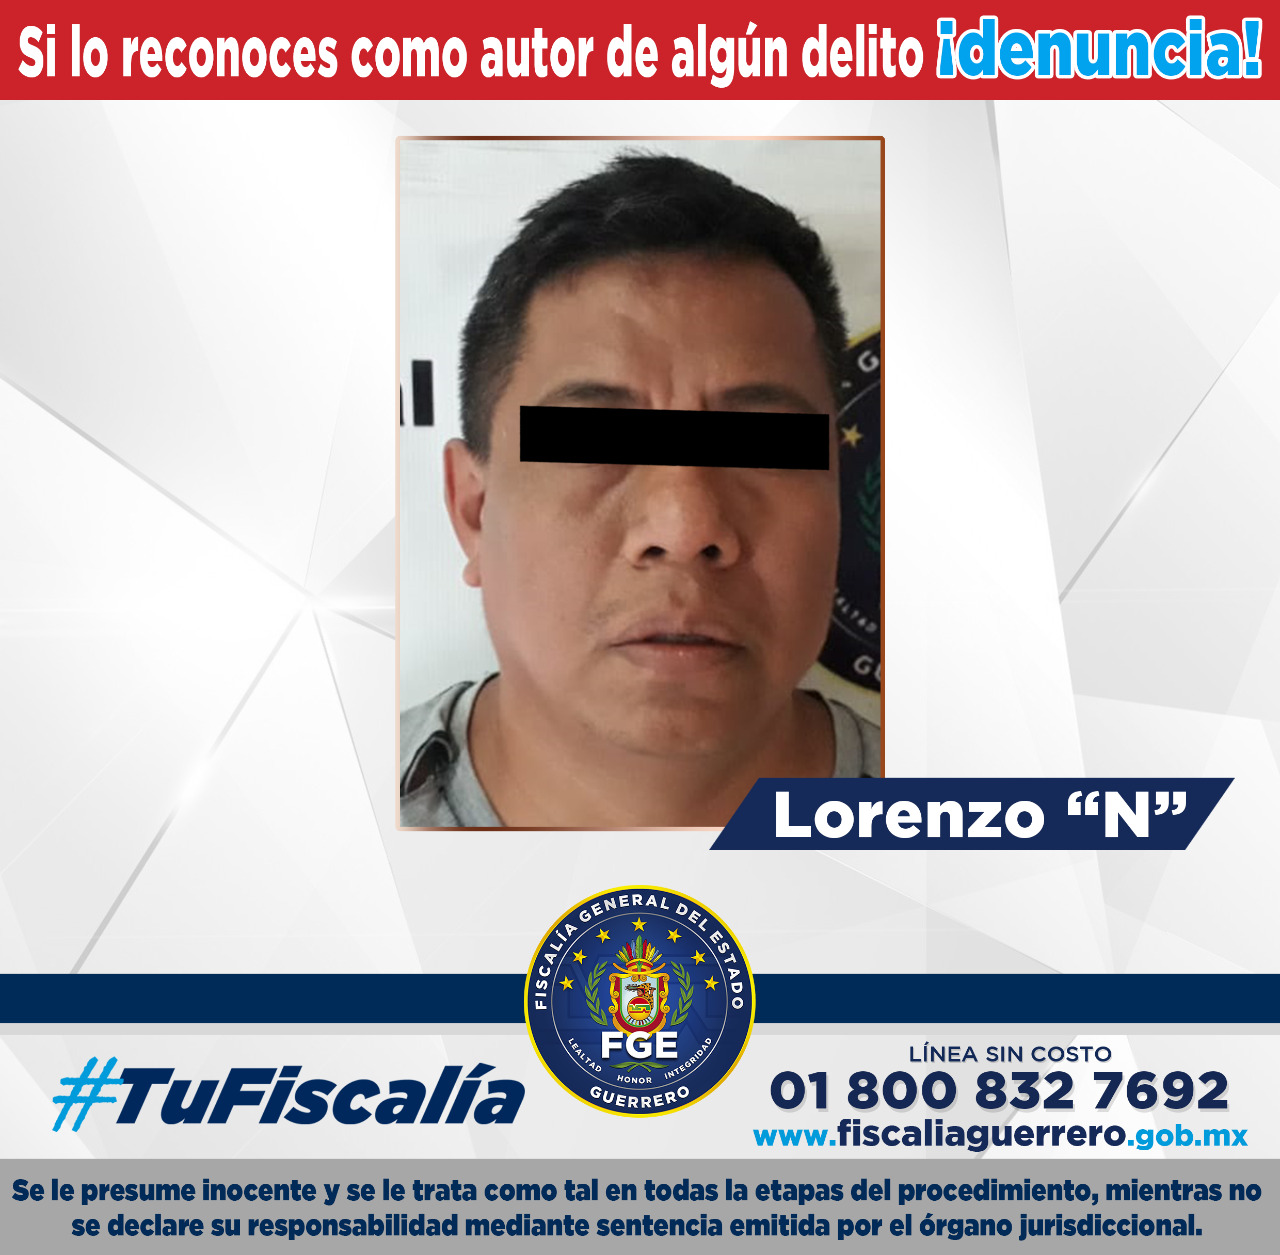 Lorenzo “N” está señalado como responsable de identificar a las víctimas en la universidad. (Foto: Fiscalía de Guerrero)